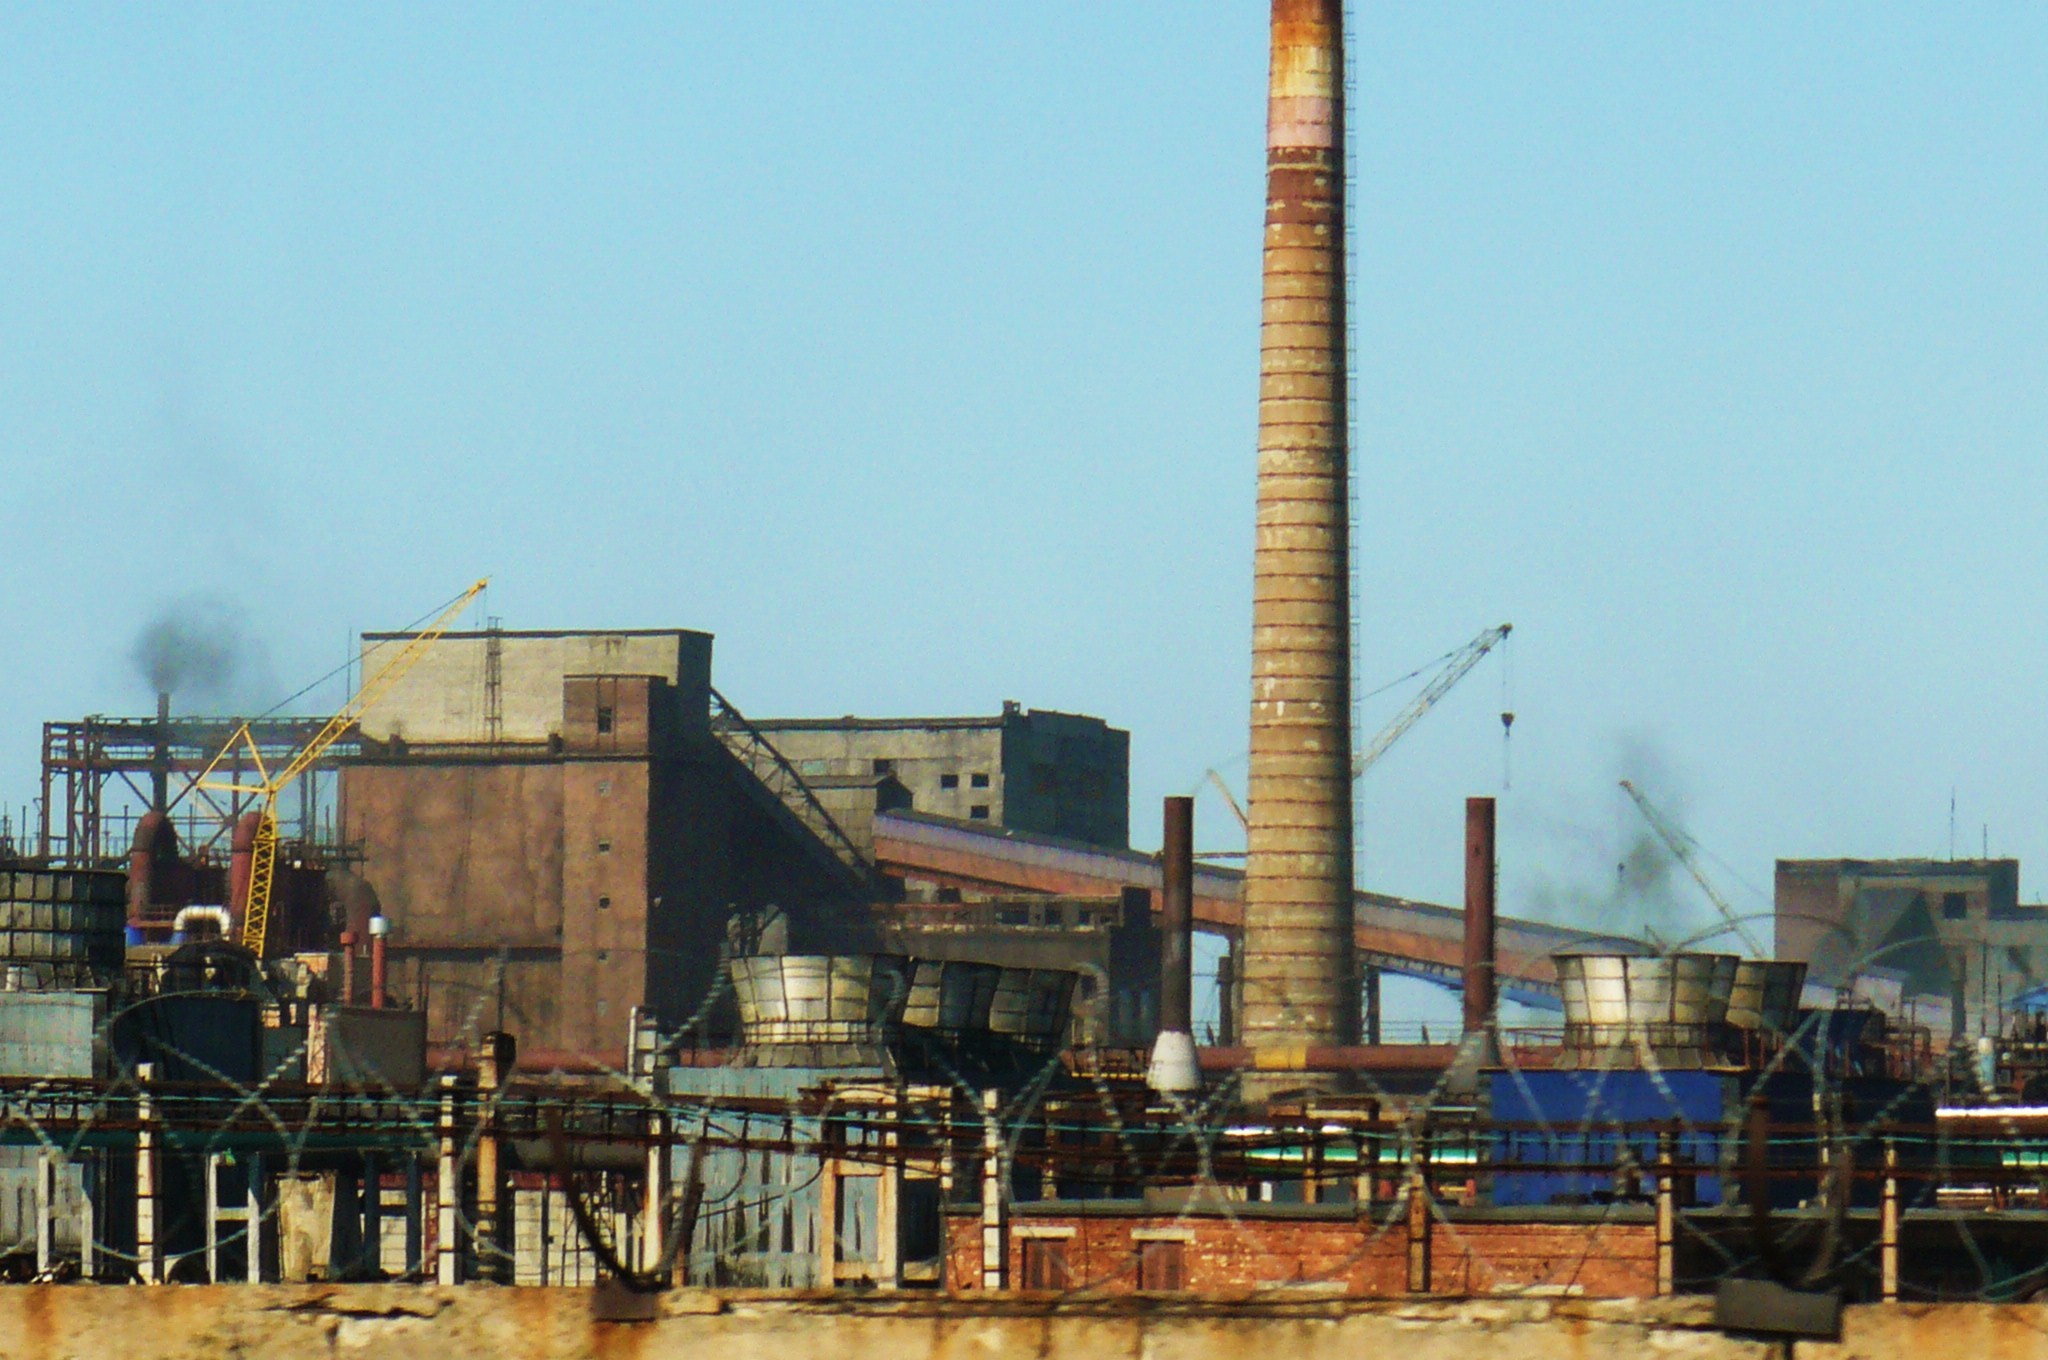 Авдеевский коксохимический завод, 2012 год. Фото Wikipedia CC BY-SA 3.0